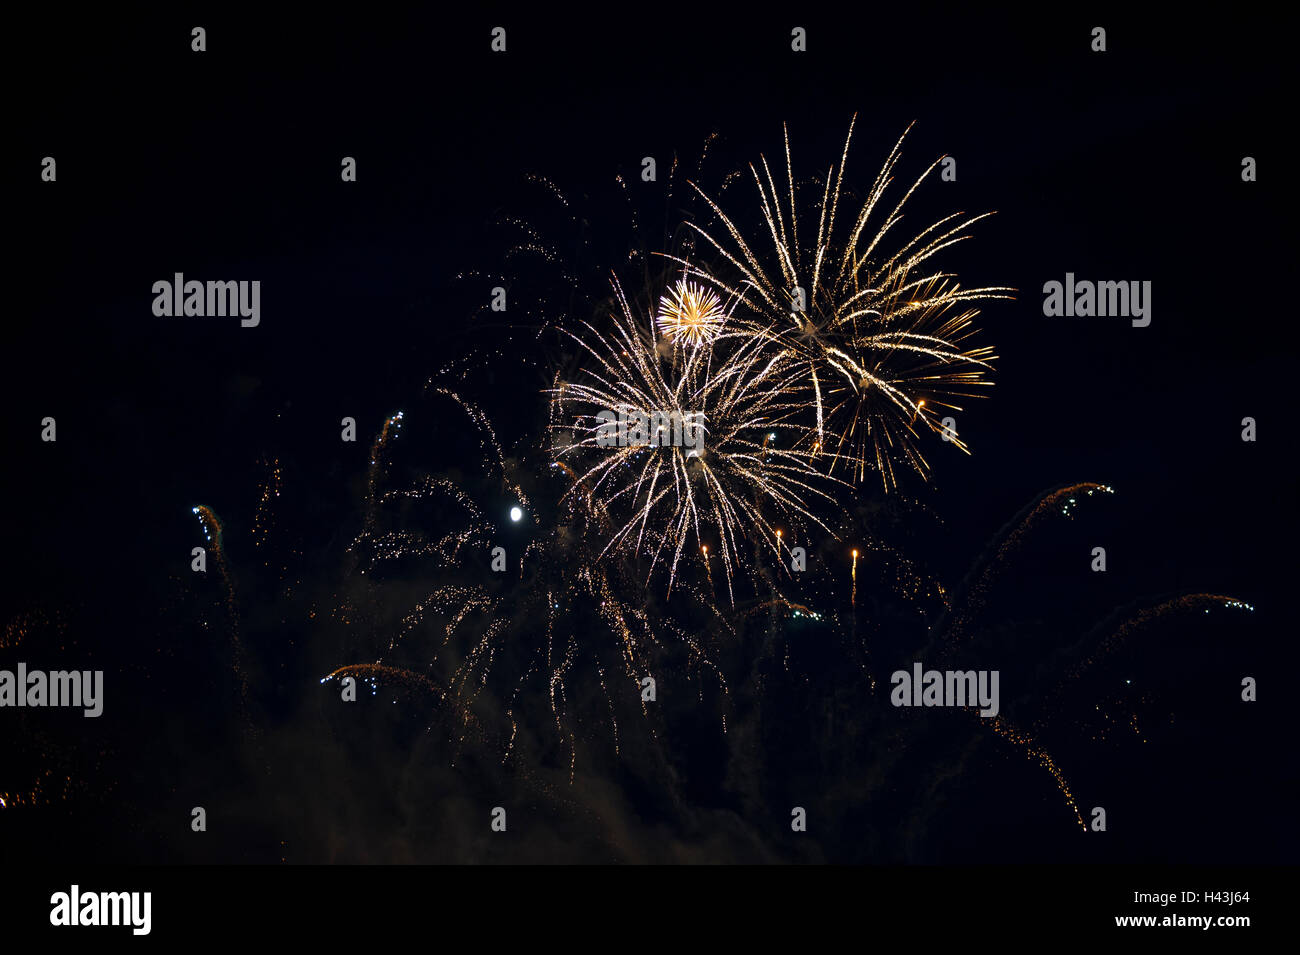 Fireworks in night sky Stock Photo